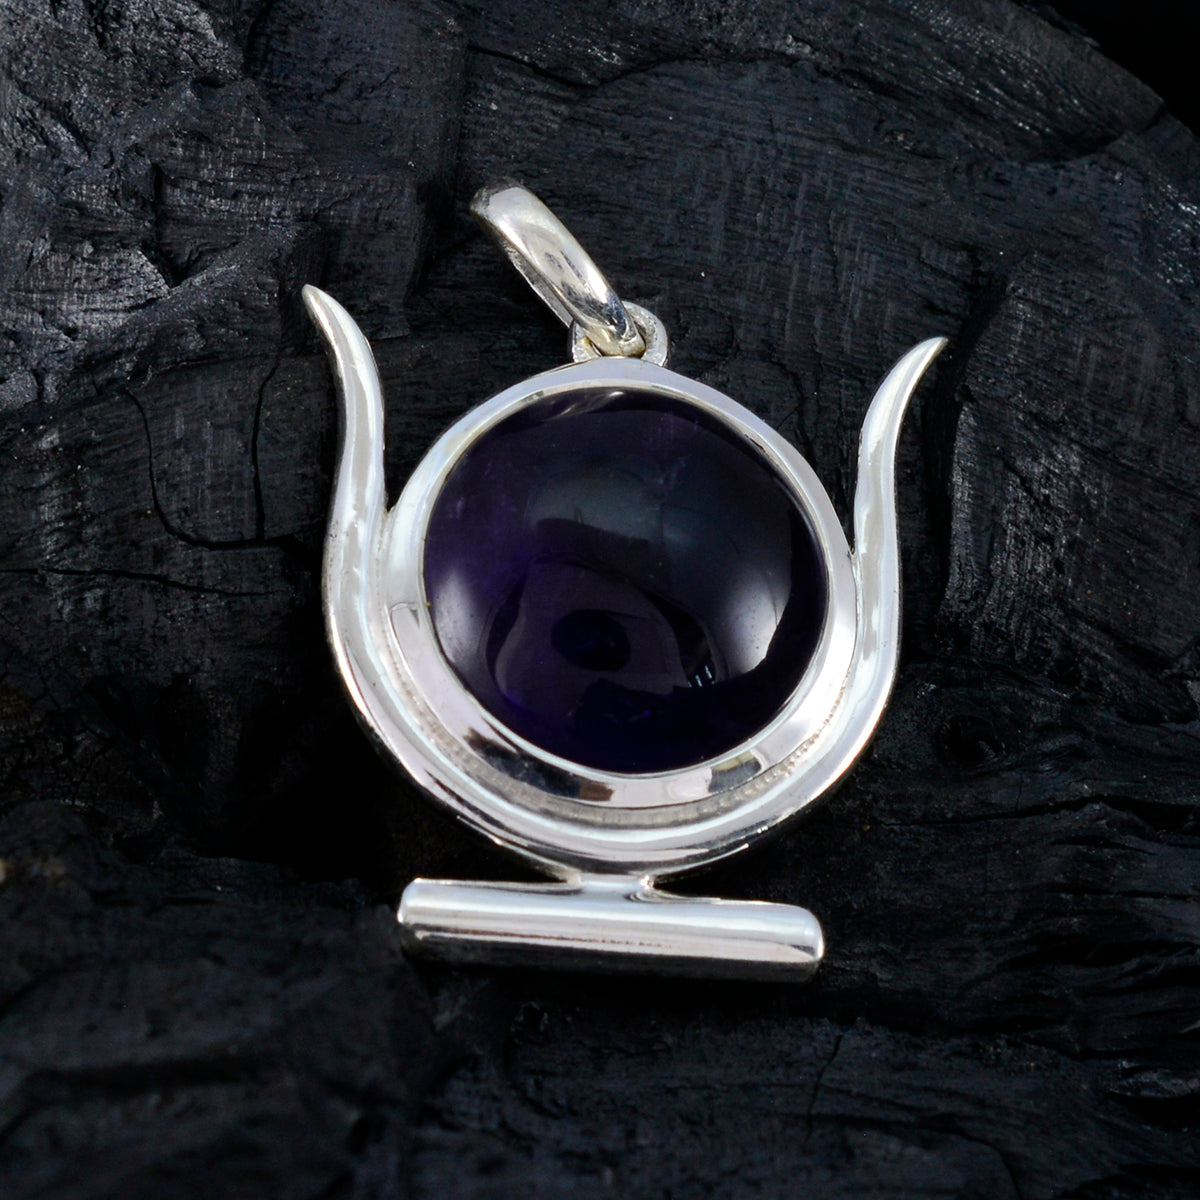 riyo attrayant pierre précieuse ronde cabochon violet améthyste pendentif en argent sterling cadeau pour la main